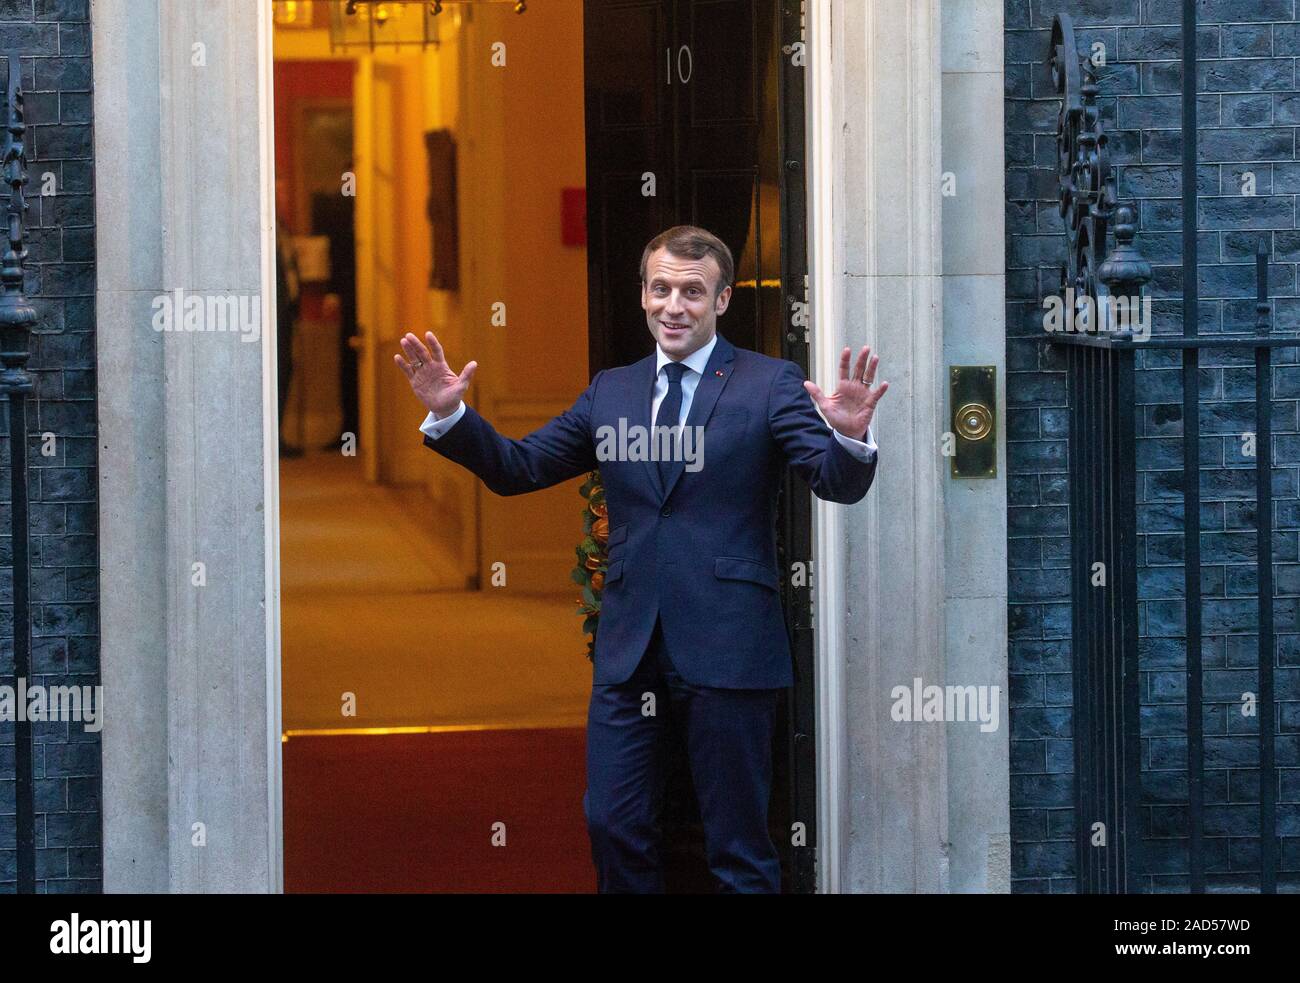 Londres, Royaume-Uni. 3 Dec 2019. Emmanuel Macron, Président de la France, arrive au numéro 10 Downing Street. Chefs d'État visiter 10 Downing Street pour s'entretenir avec le Premier ministre britannique, Boris Johnson. Credit : Tommy Londres/Alamy Live News Banque D'Images